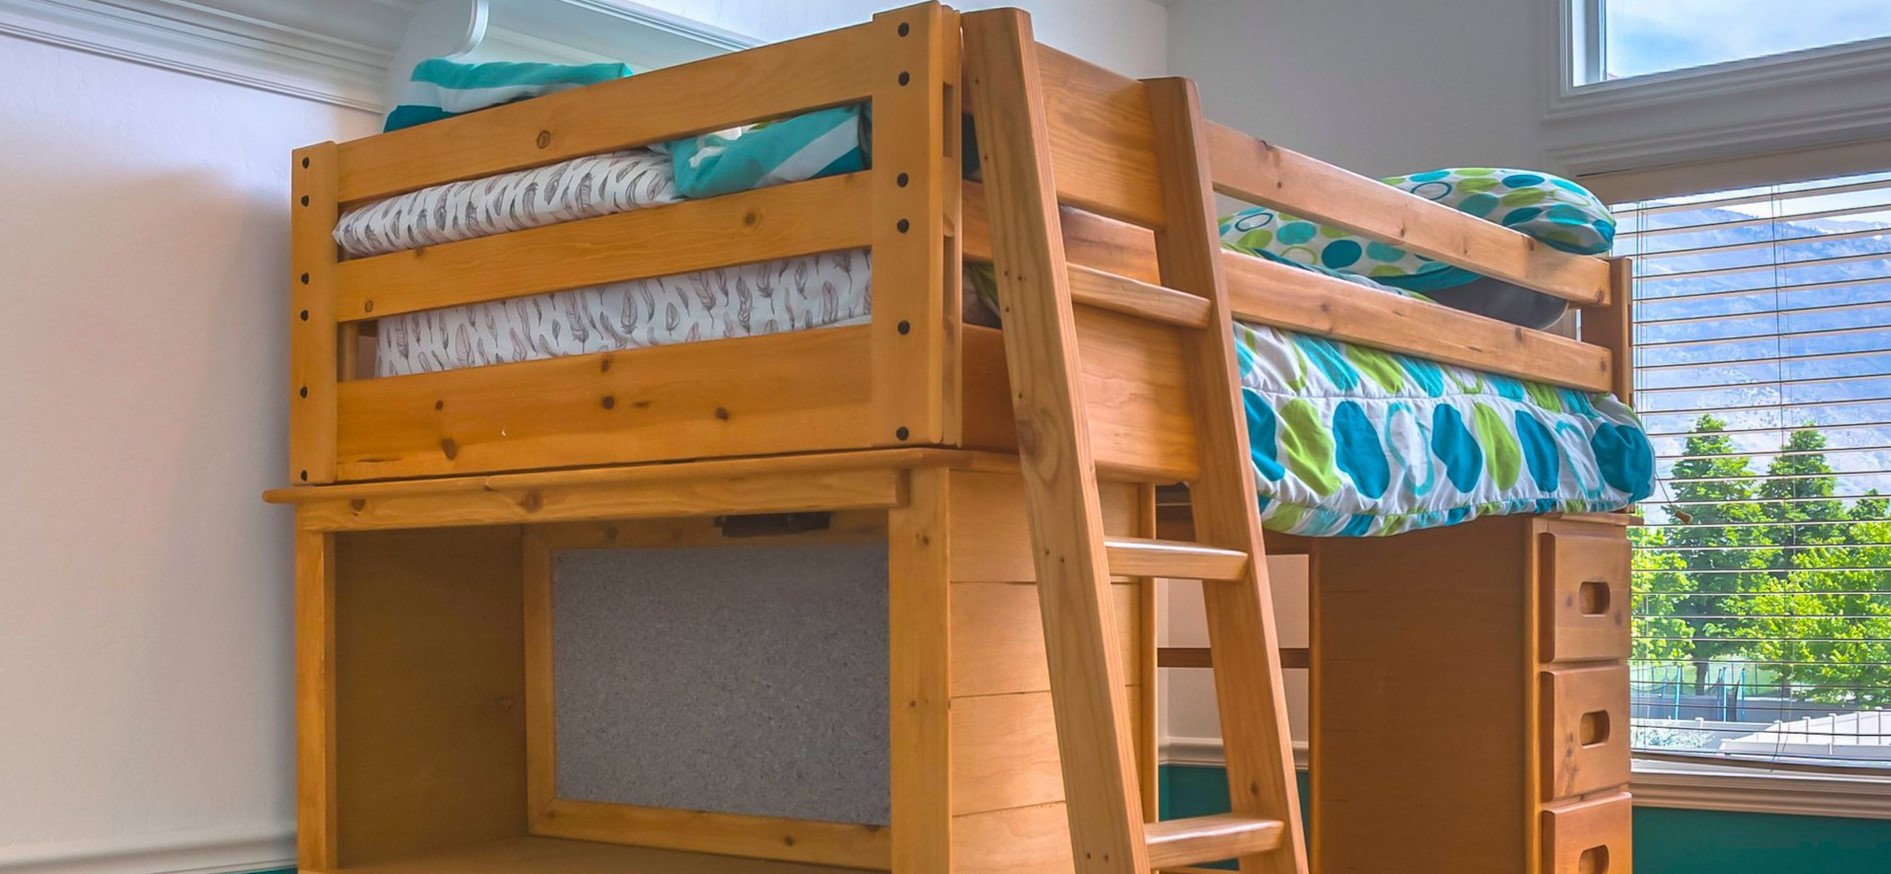 Двухъярусная кровать с нишей, в которой можно разместить декор или хранить повседневные вещи